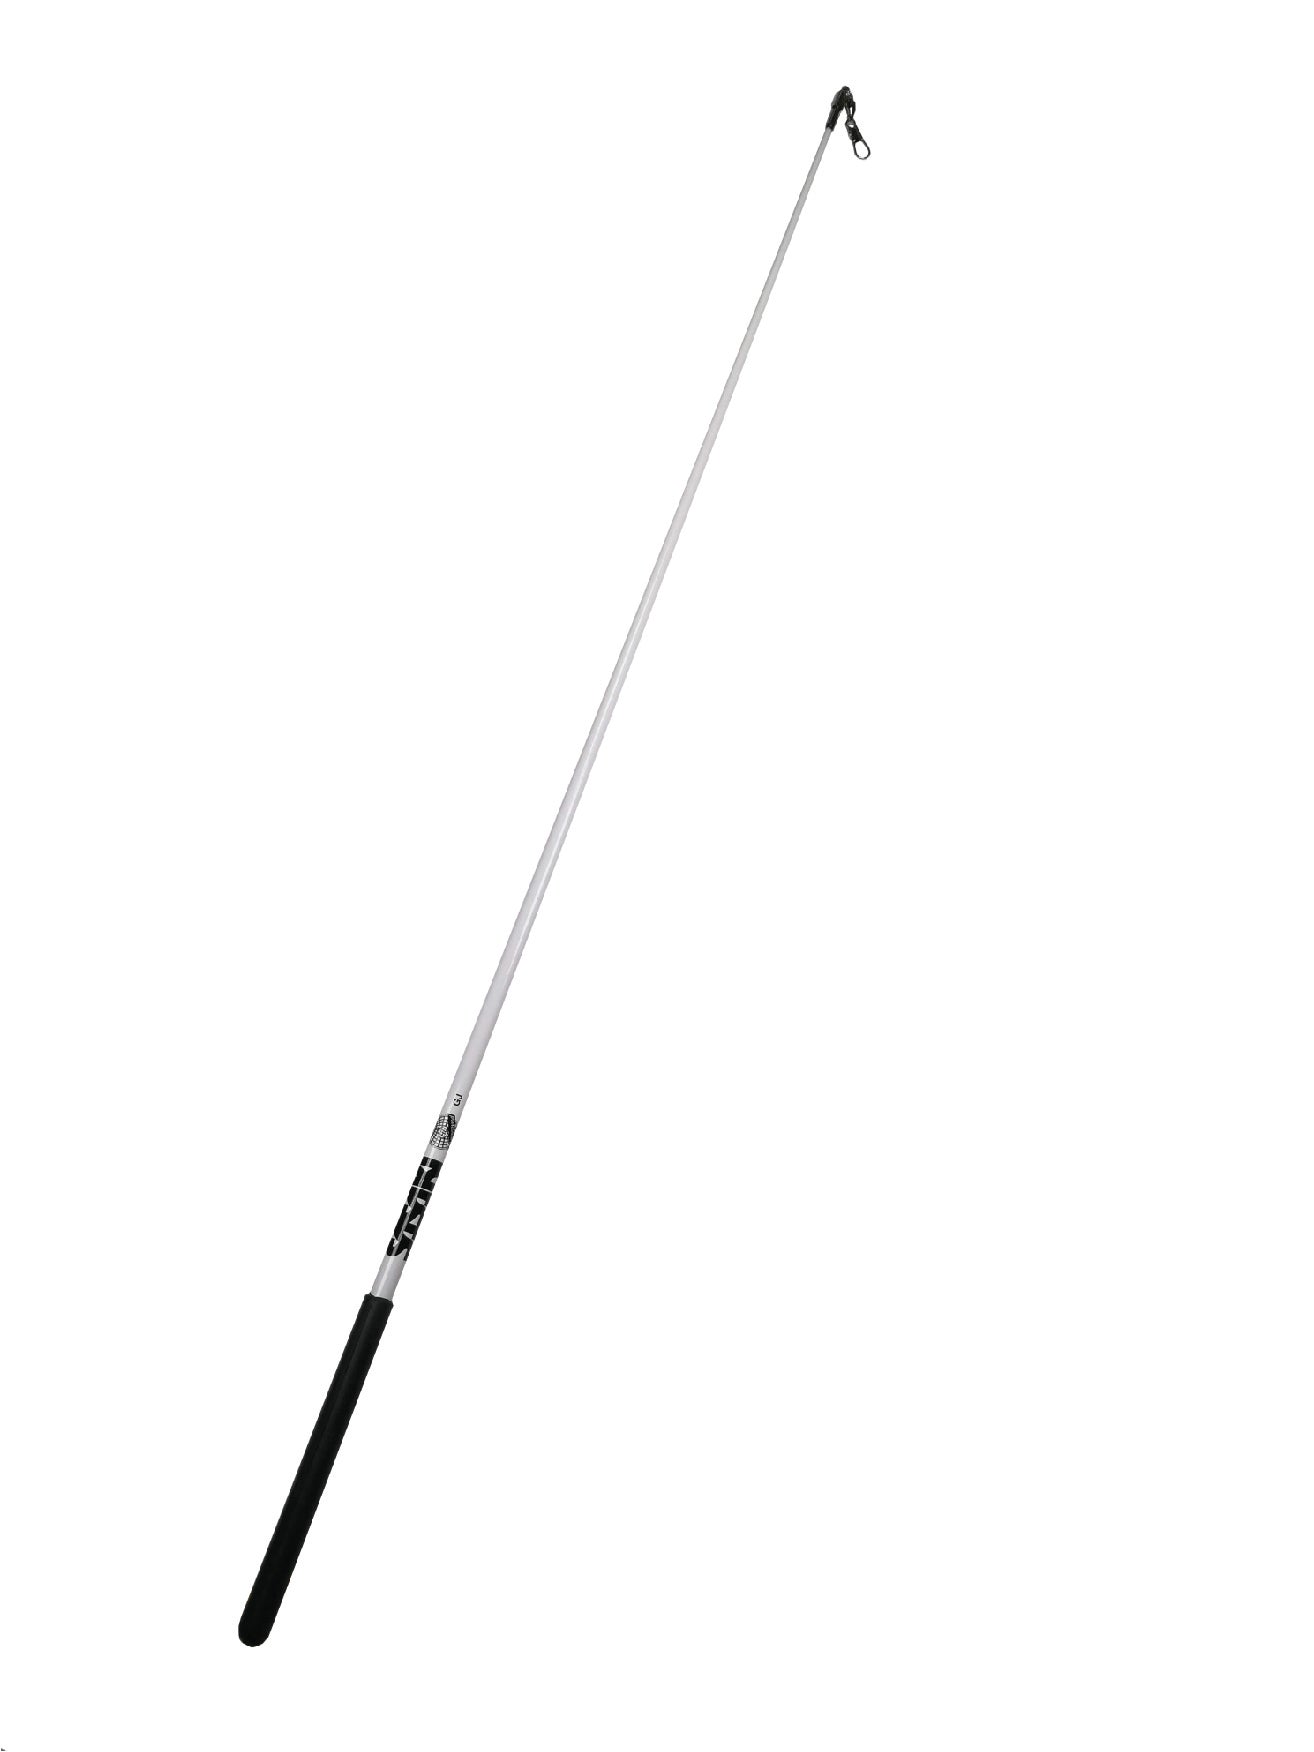 Bandpinne M-781W, 60 cm, vit - FIG, SASAKI